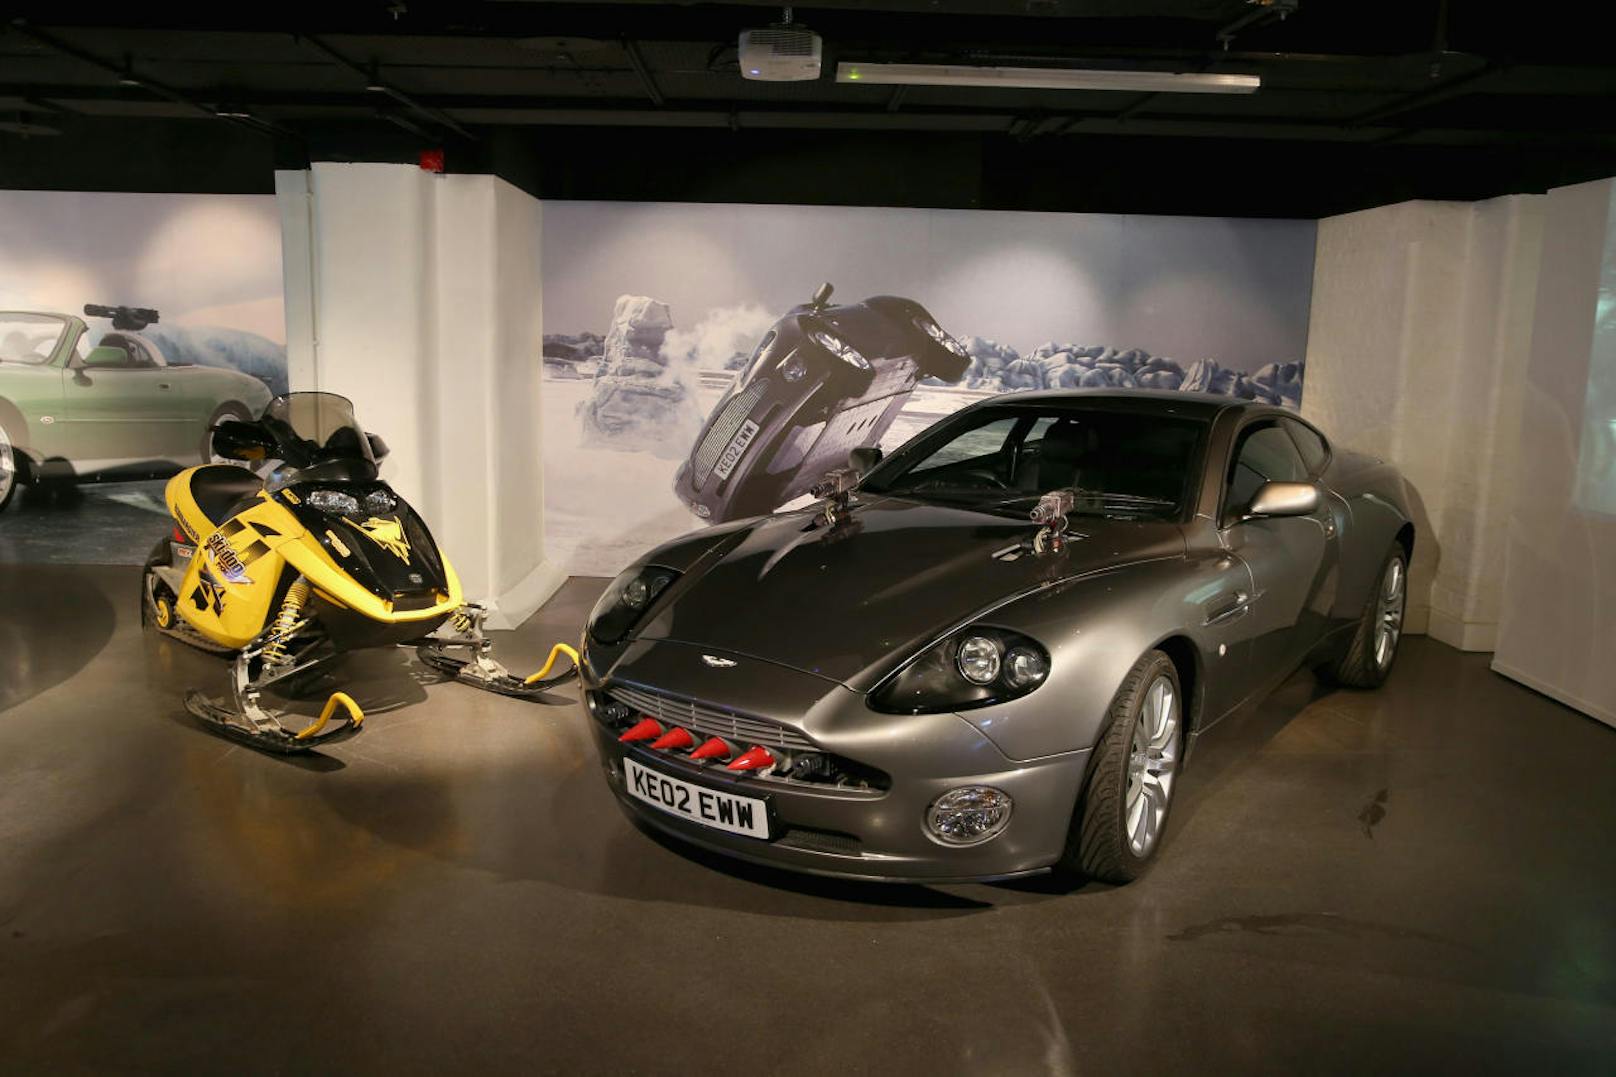 Aston Martin V12 Vanquish und Bombardier MX Z-Rey Ski-doo "Stirb an einem anderen Tag" (2002)